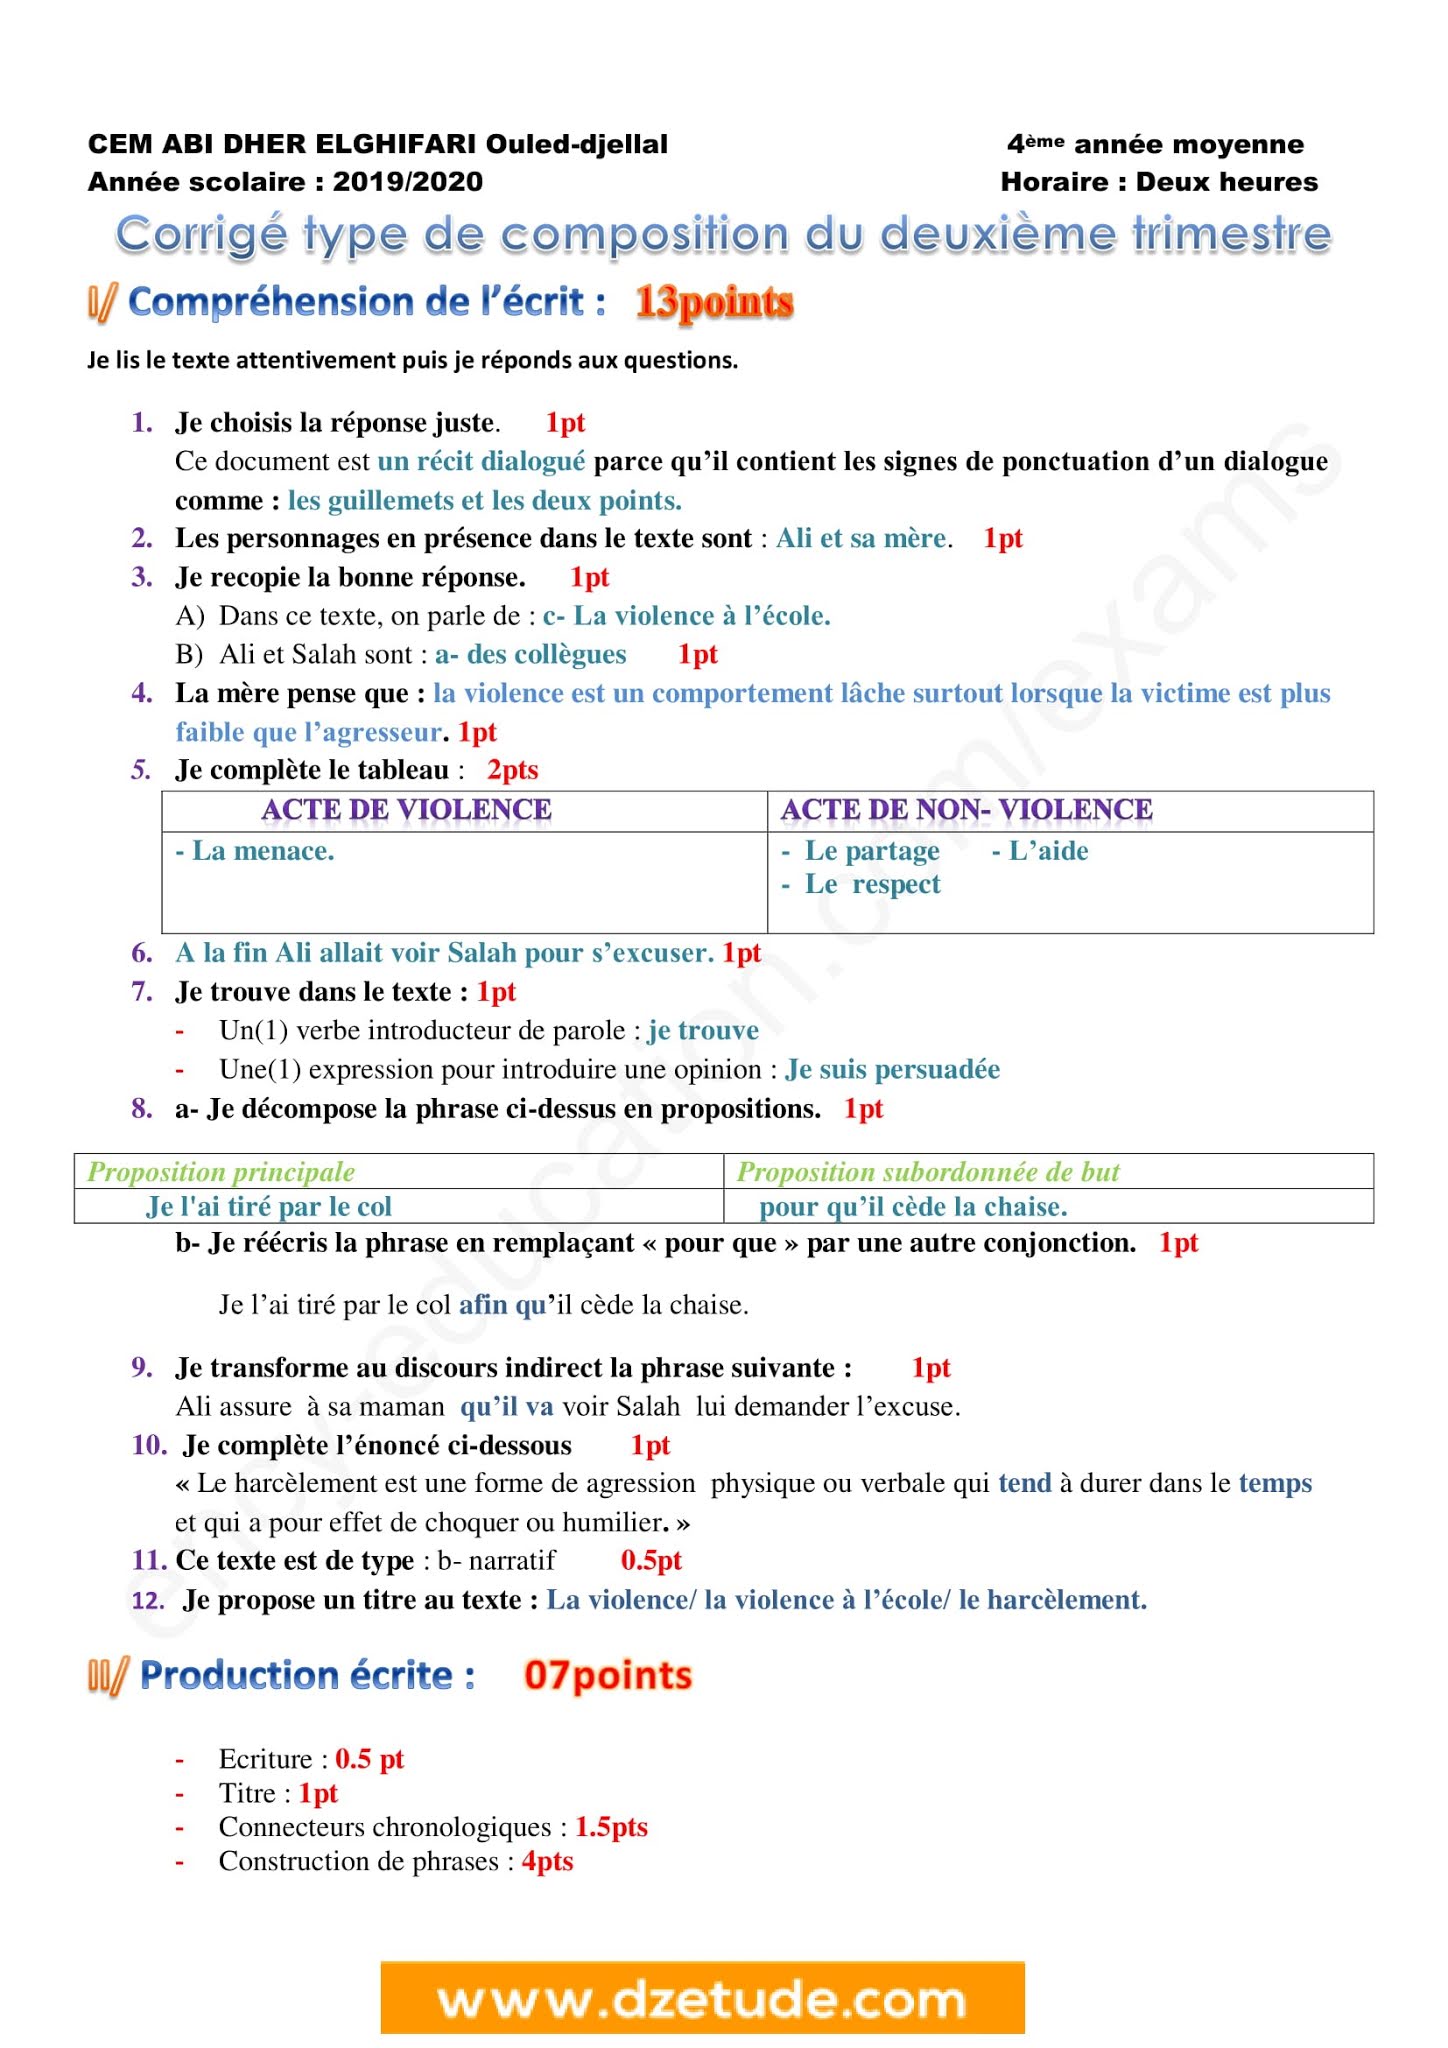 إختبار اللغة الفرنسية الفصل الثاني للسنة الرابعة متوسط - الجيل الثاني نموذج 9